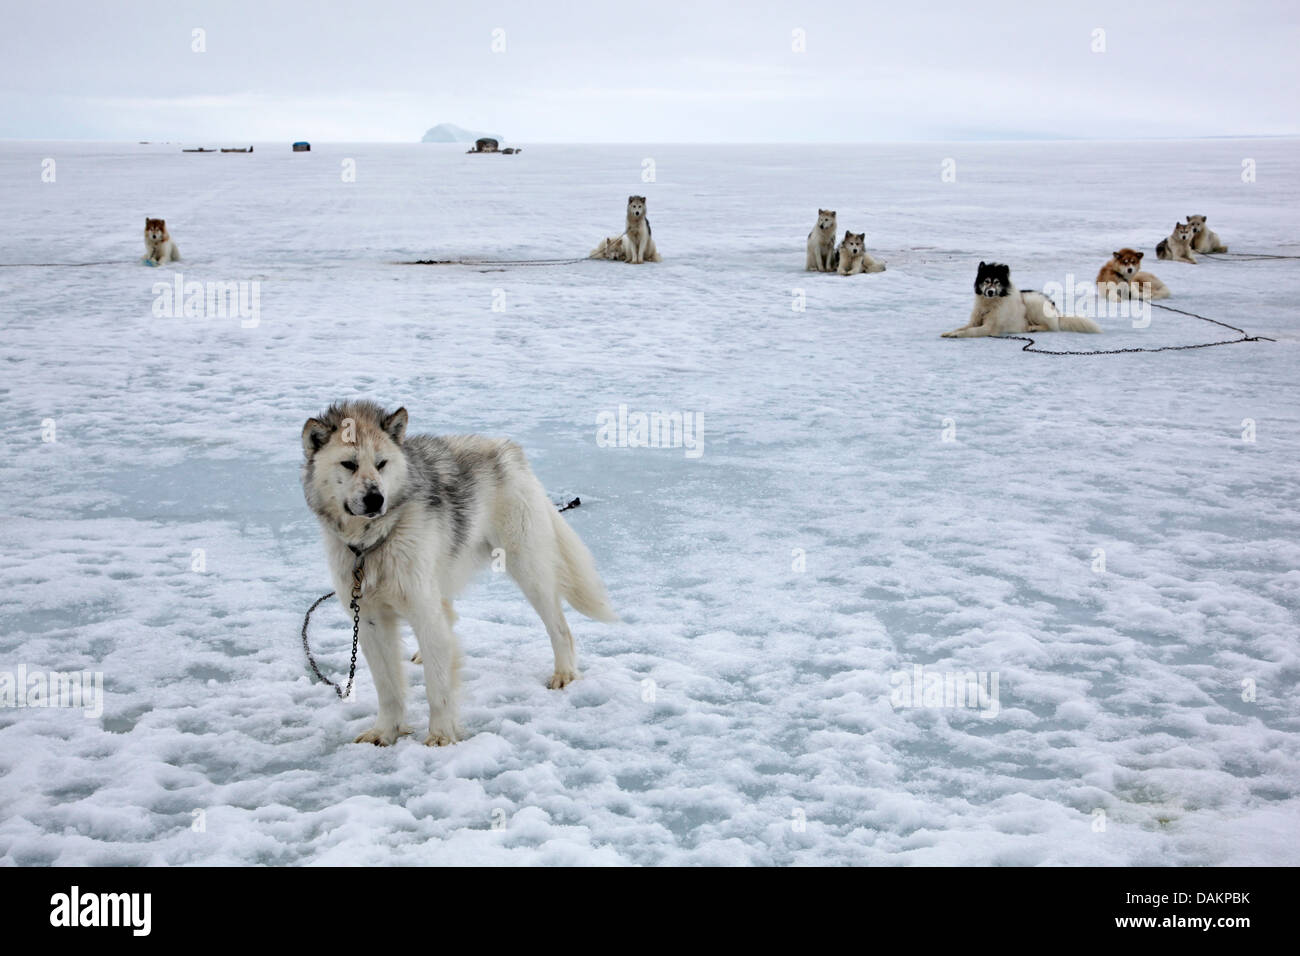 Alaskan Malamute (Canis lupus f. familiaris), slitte trainate da cani in appoggio sul ghiaccio, Canada, Nunavut, ingresso di stagno Foto Stock